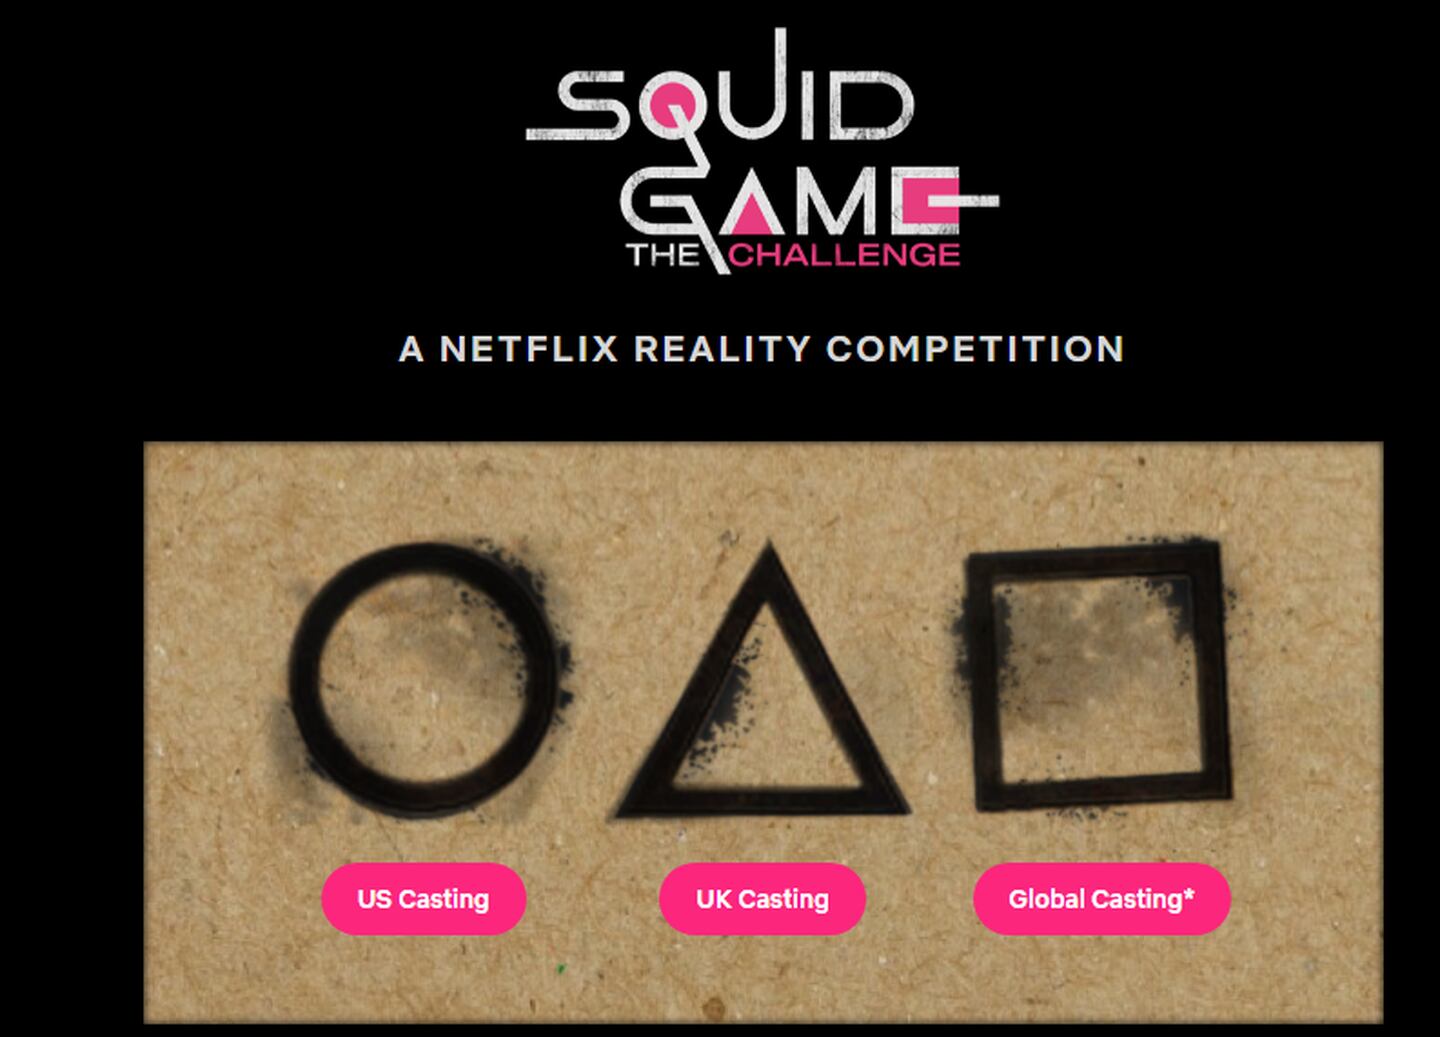 Con esta imagen anunció Netflix el nuevo reallity show basado en El Juego del Calamardfd